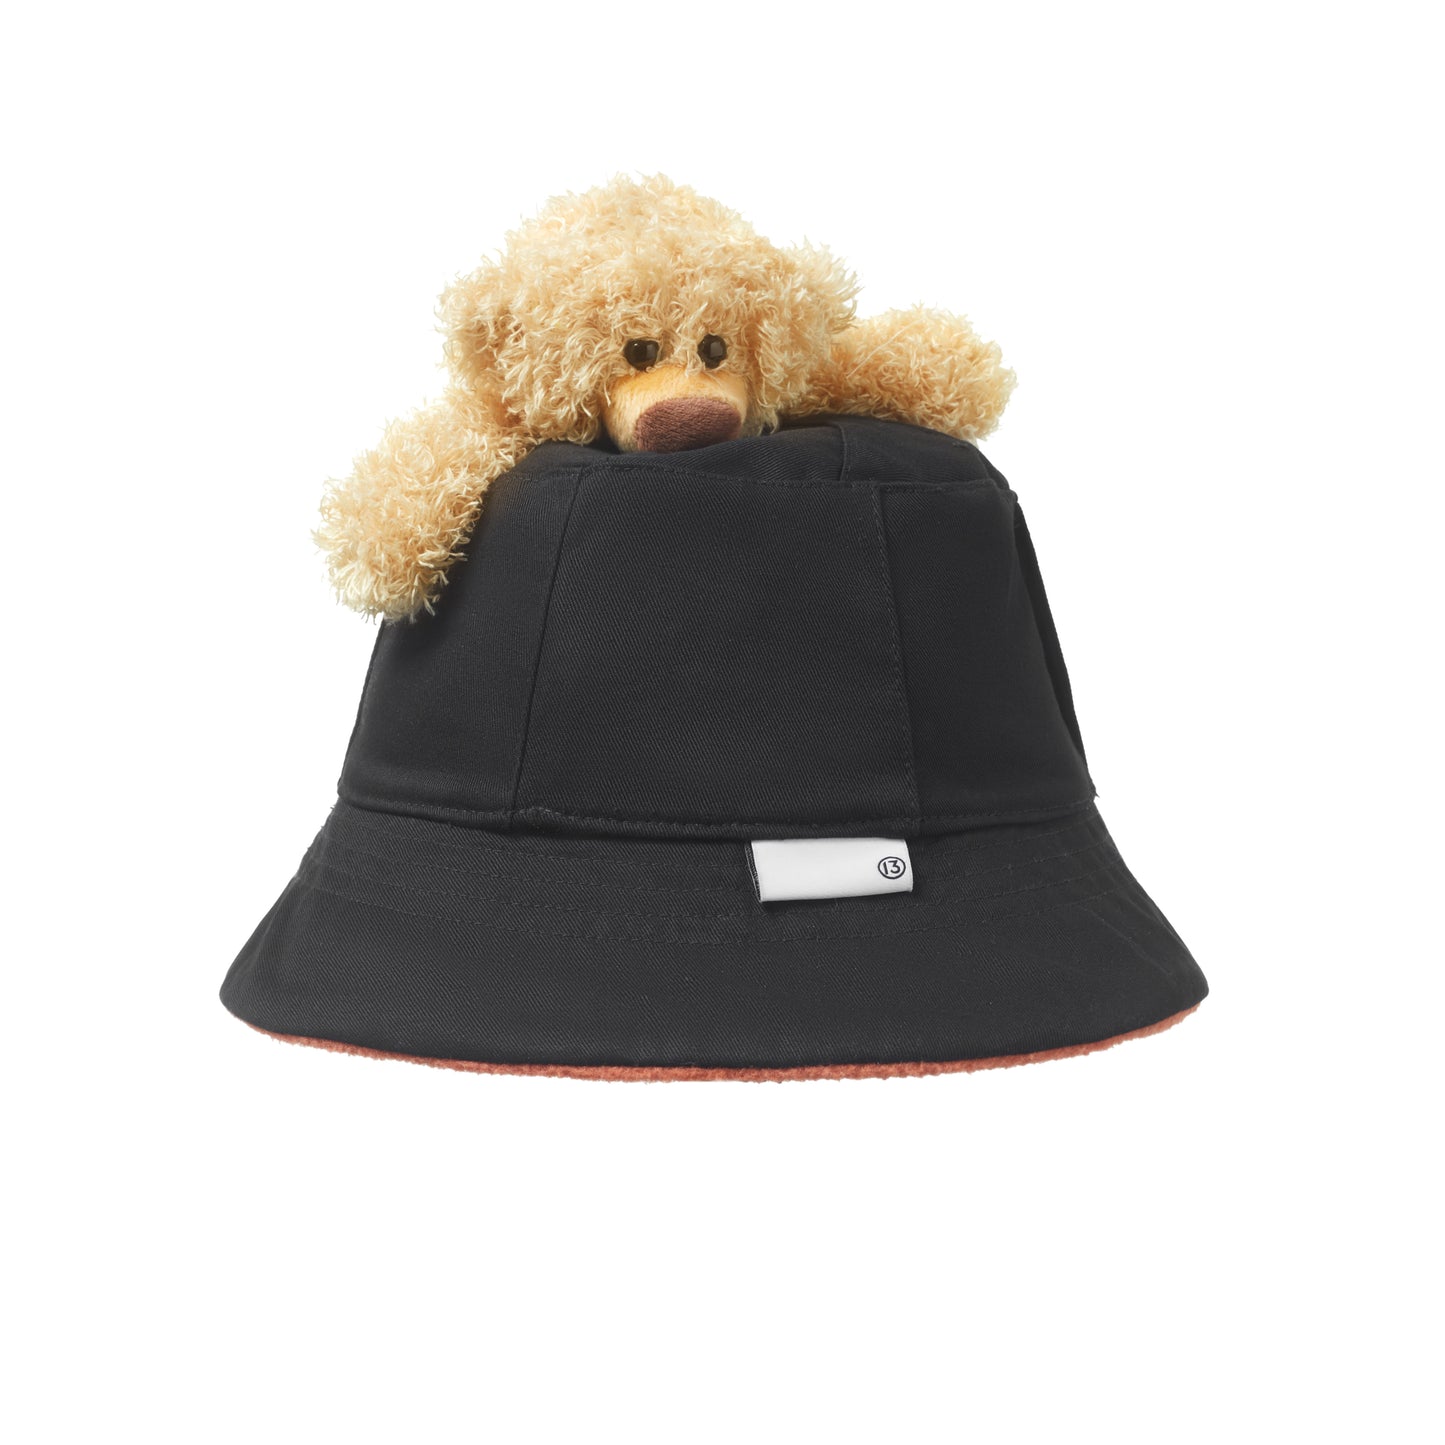 13DE MARZO Bear Inside-out Plaid Bucket Hat